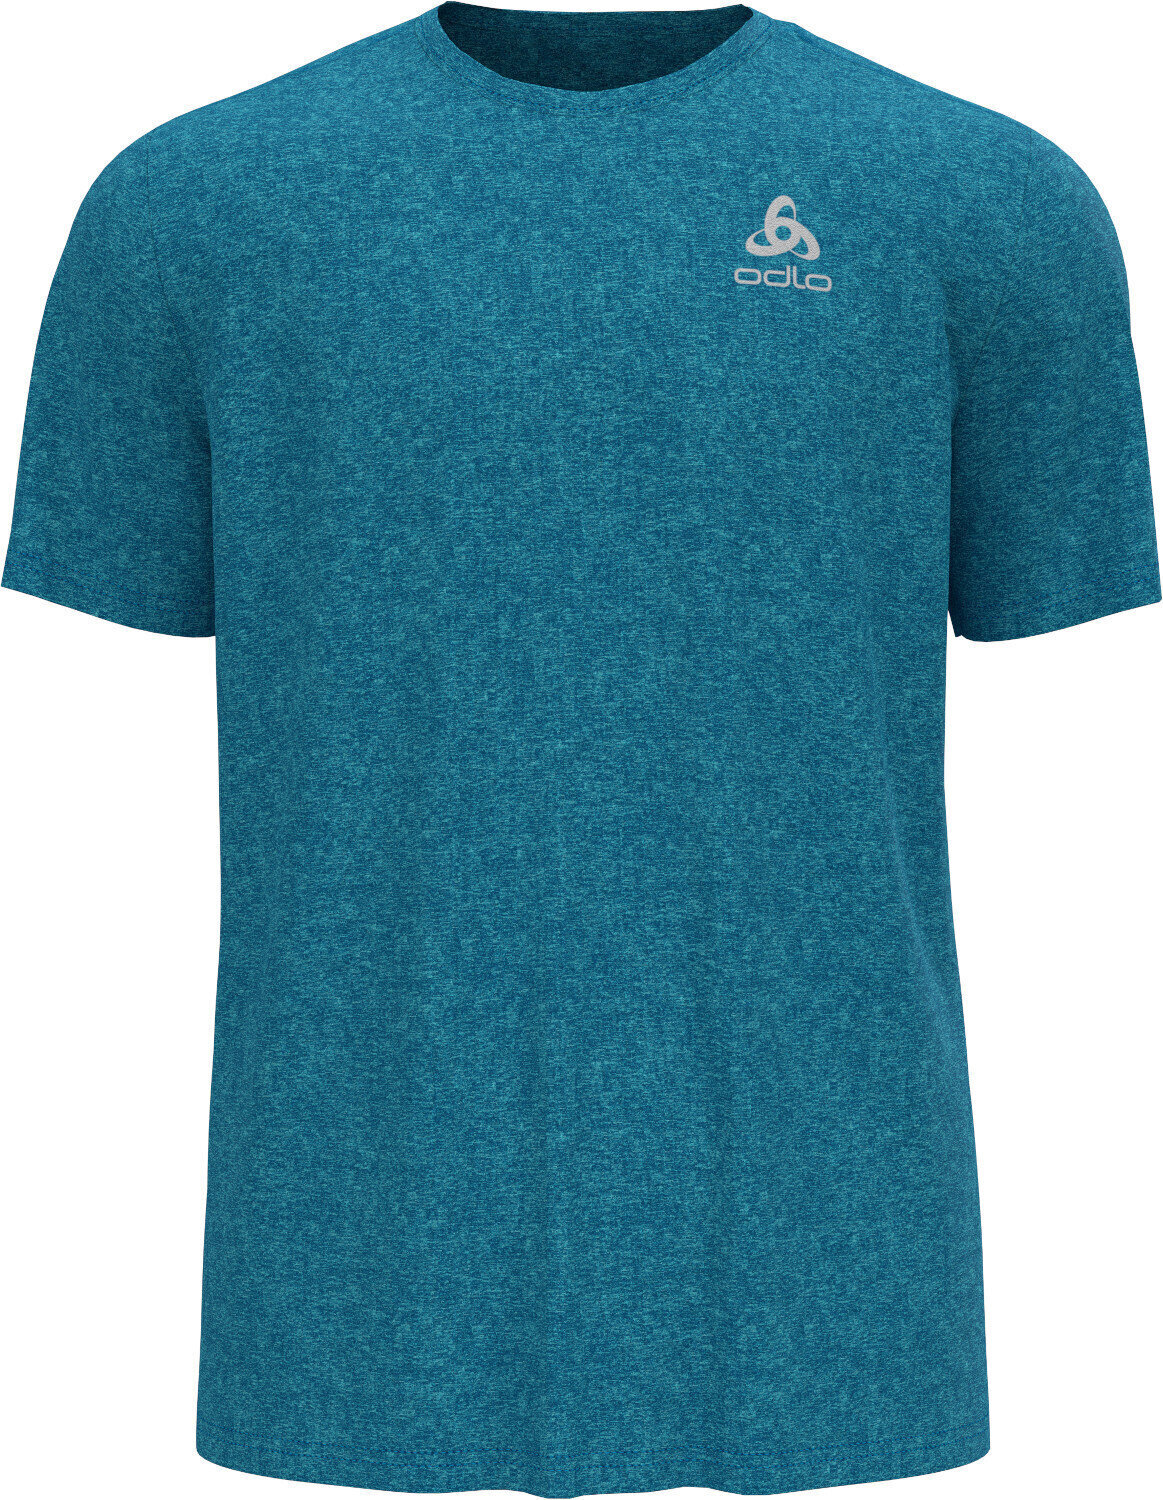 Lyhythihainen juoksupaita Odlo Run Easy 365 T-Shirt Horizon Blue Melange S Lyhythihainen juoksupaita